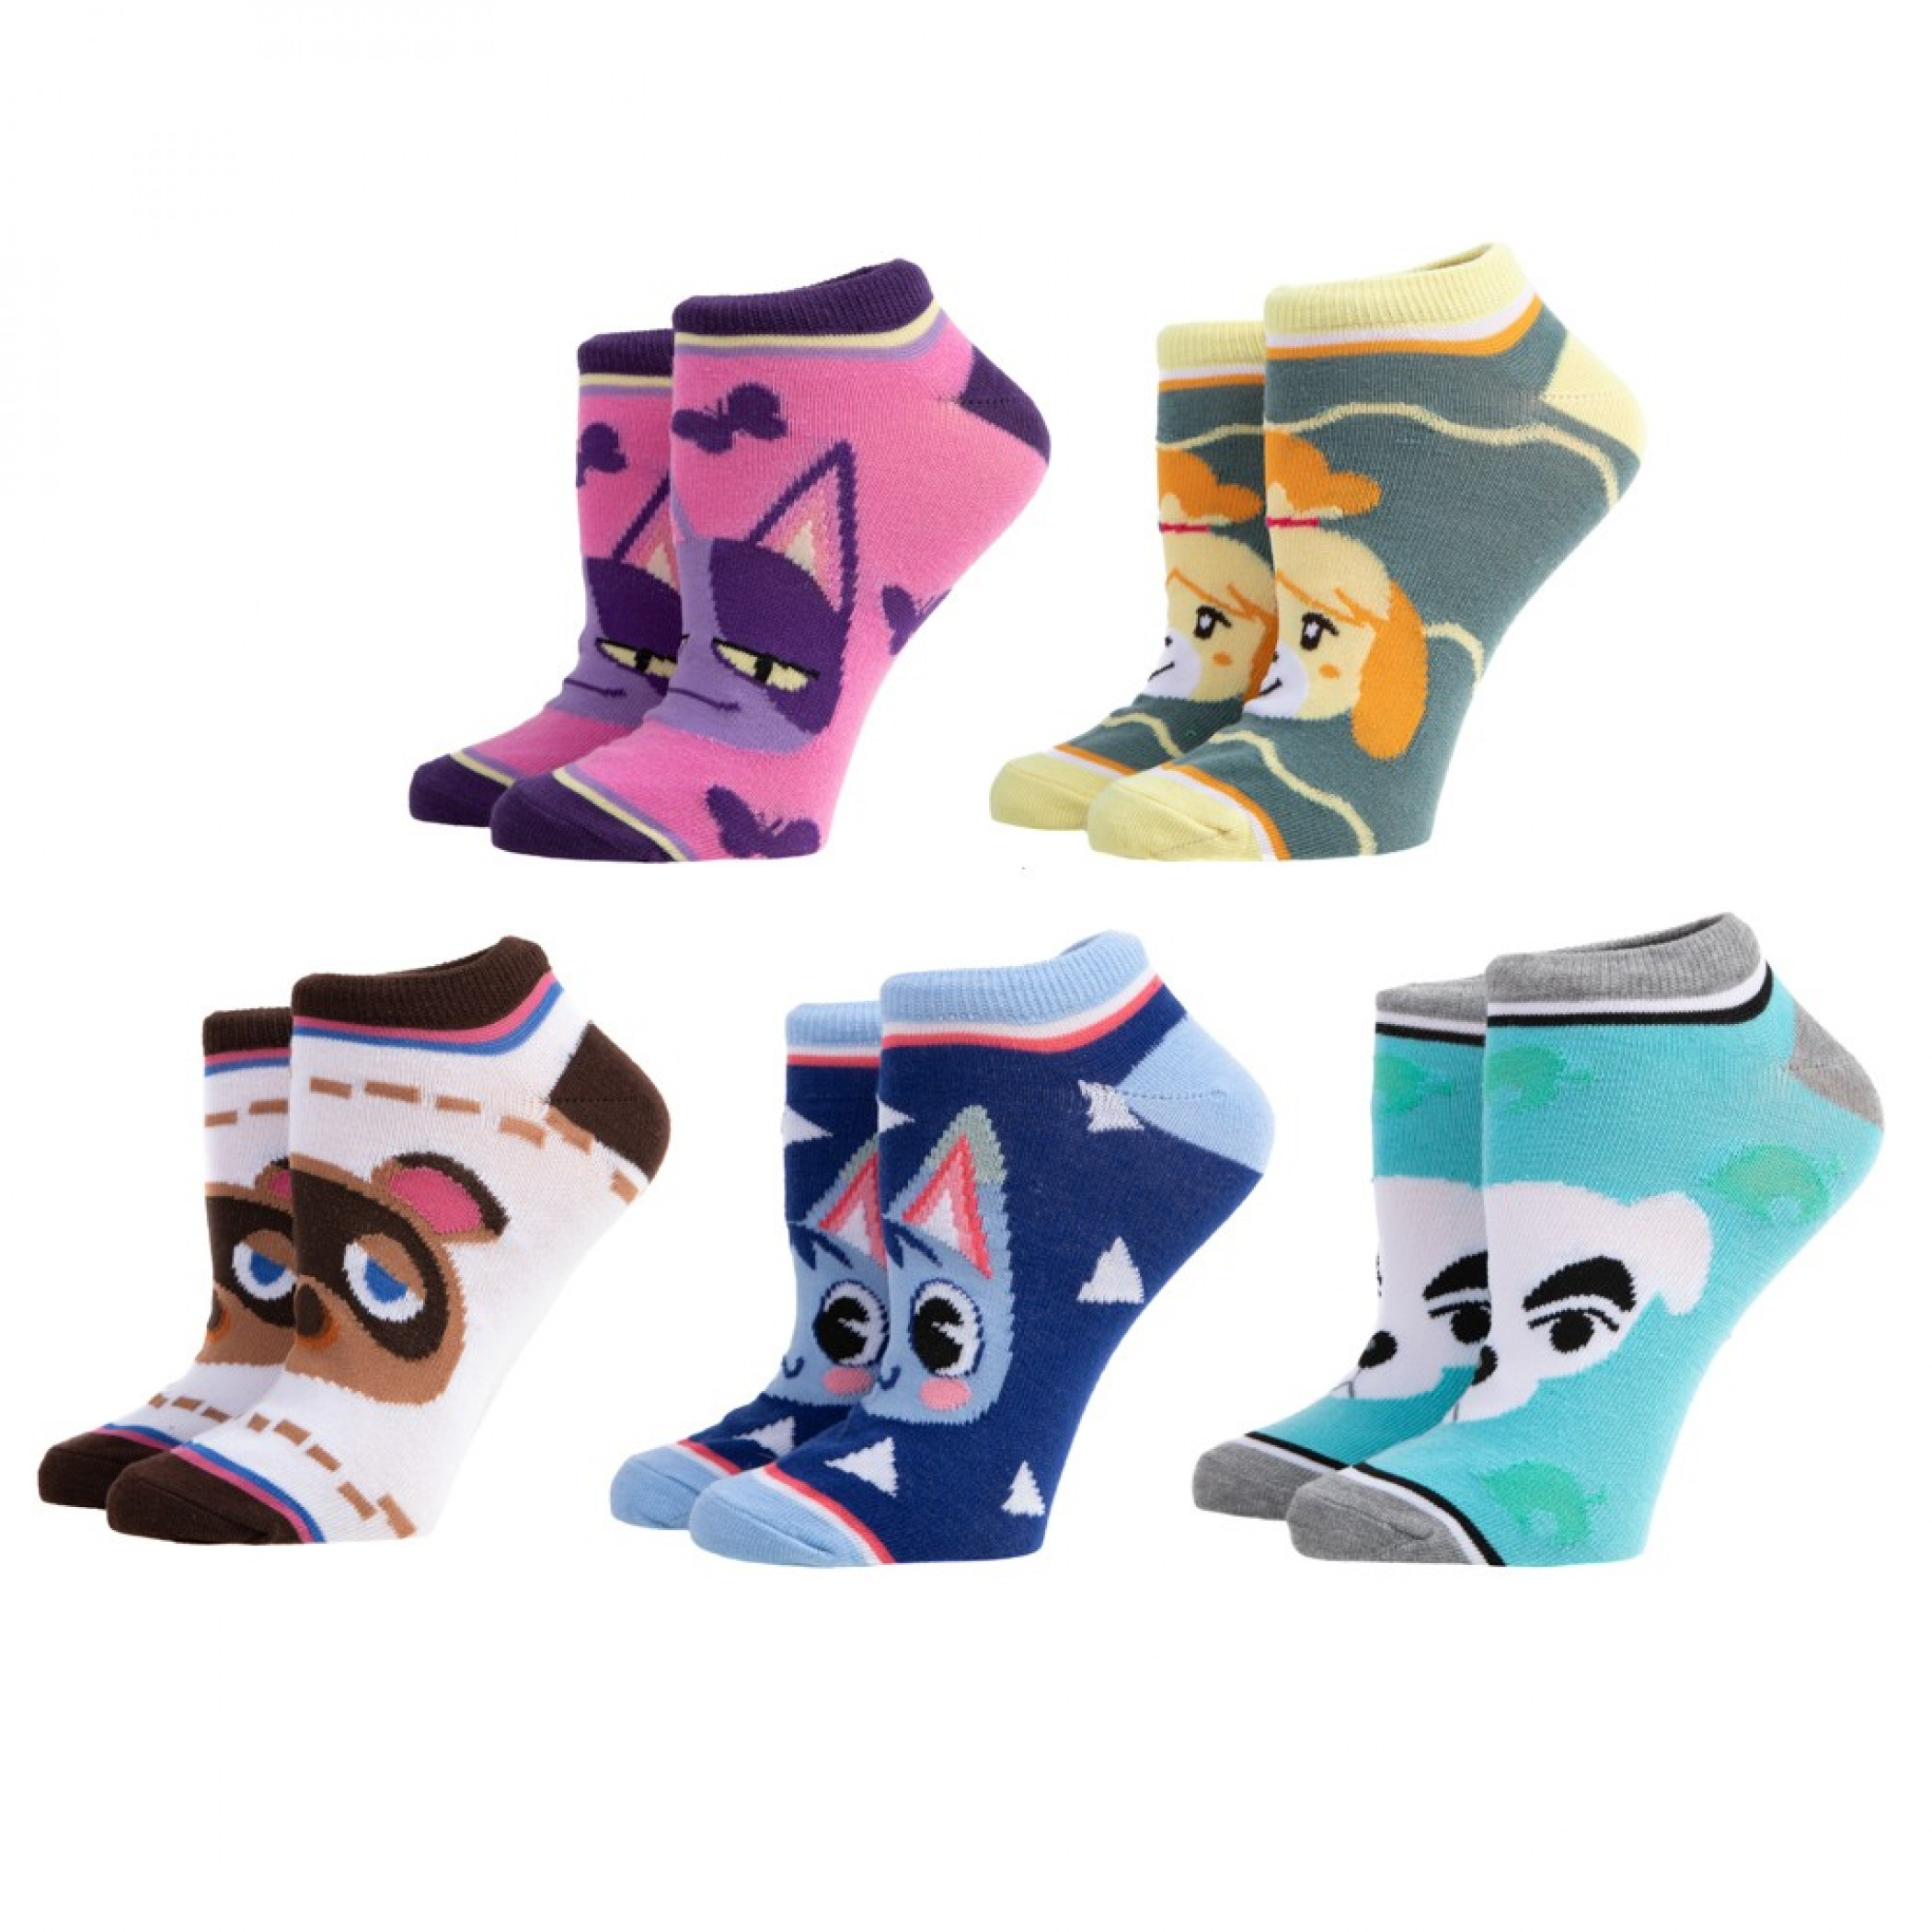 Animal Crossing 5-Pair Pack of Ankle Socks